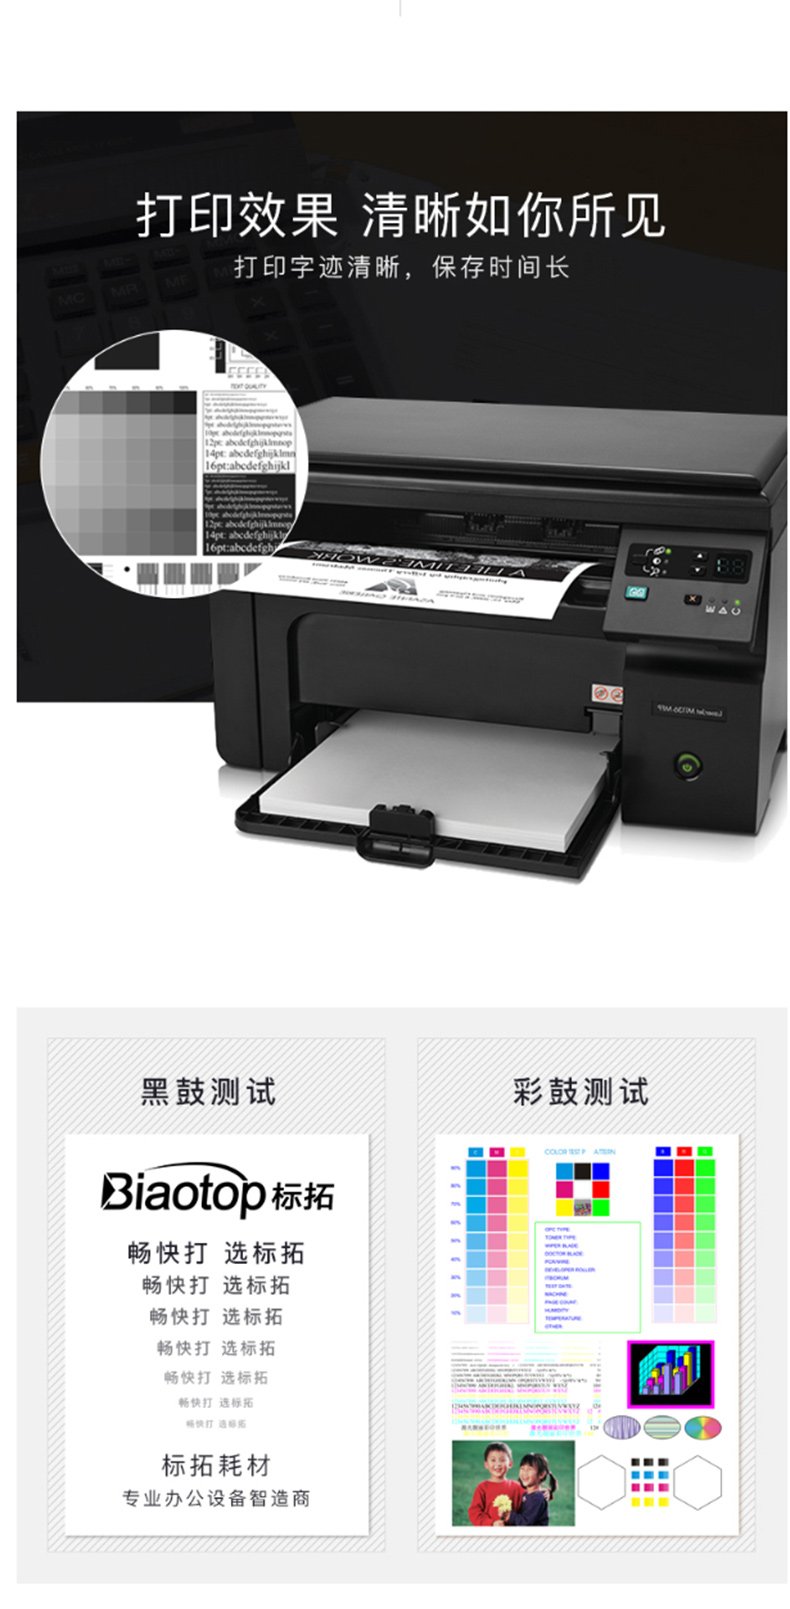 标拓 Biaotop 硒鼓 BT-DR2250/LD2441 (黑色) 适用于兄弟2240打印机